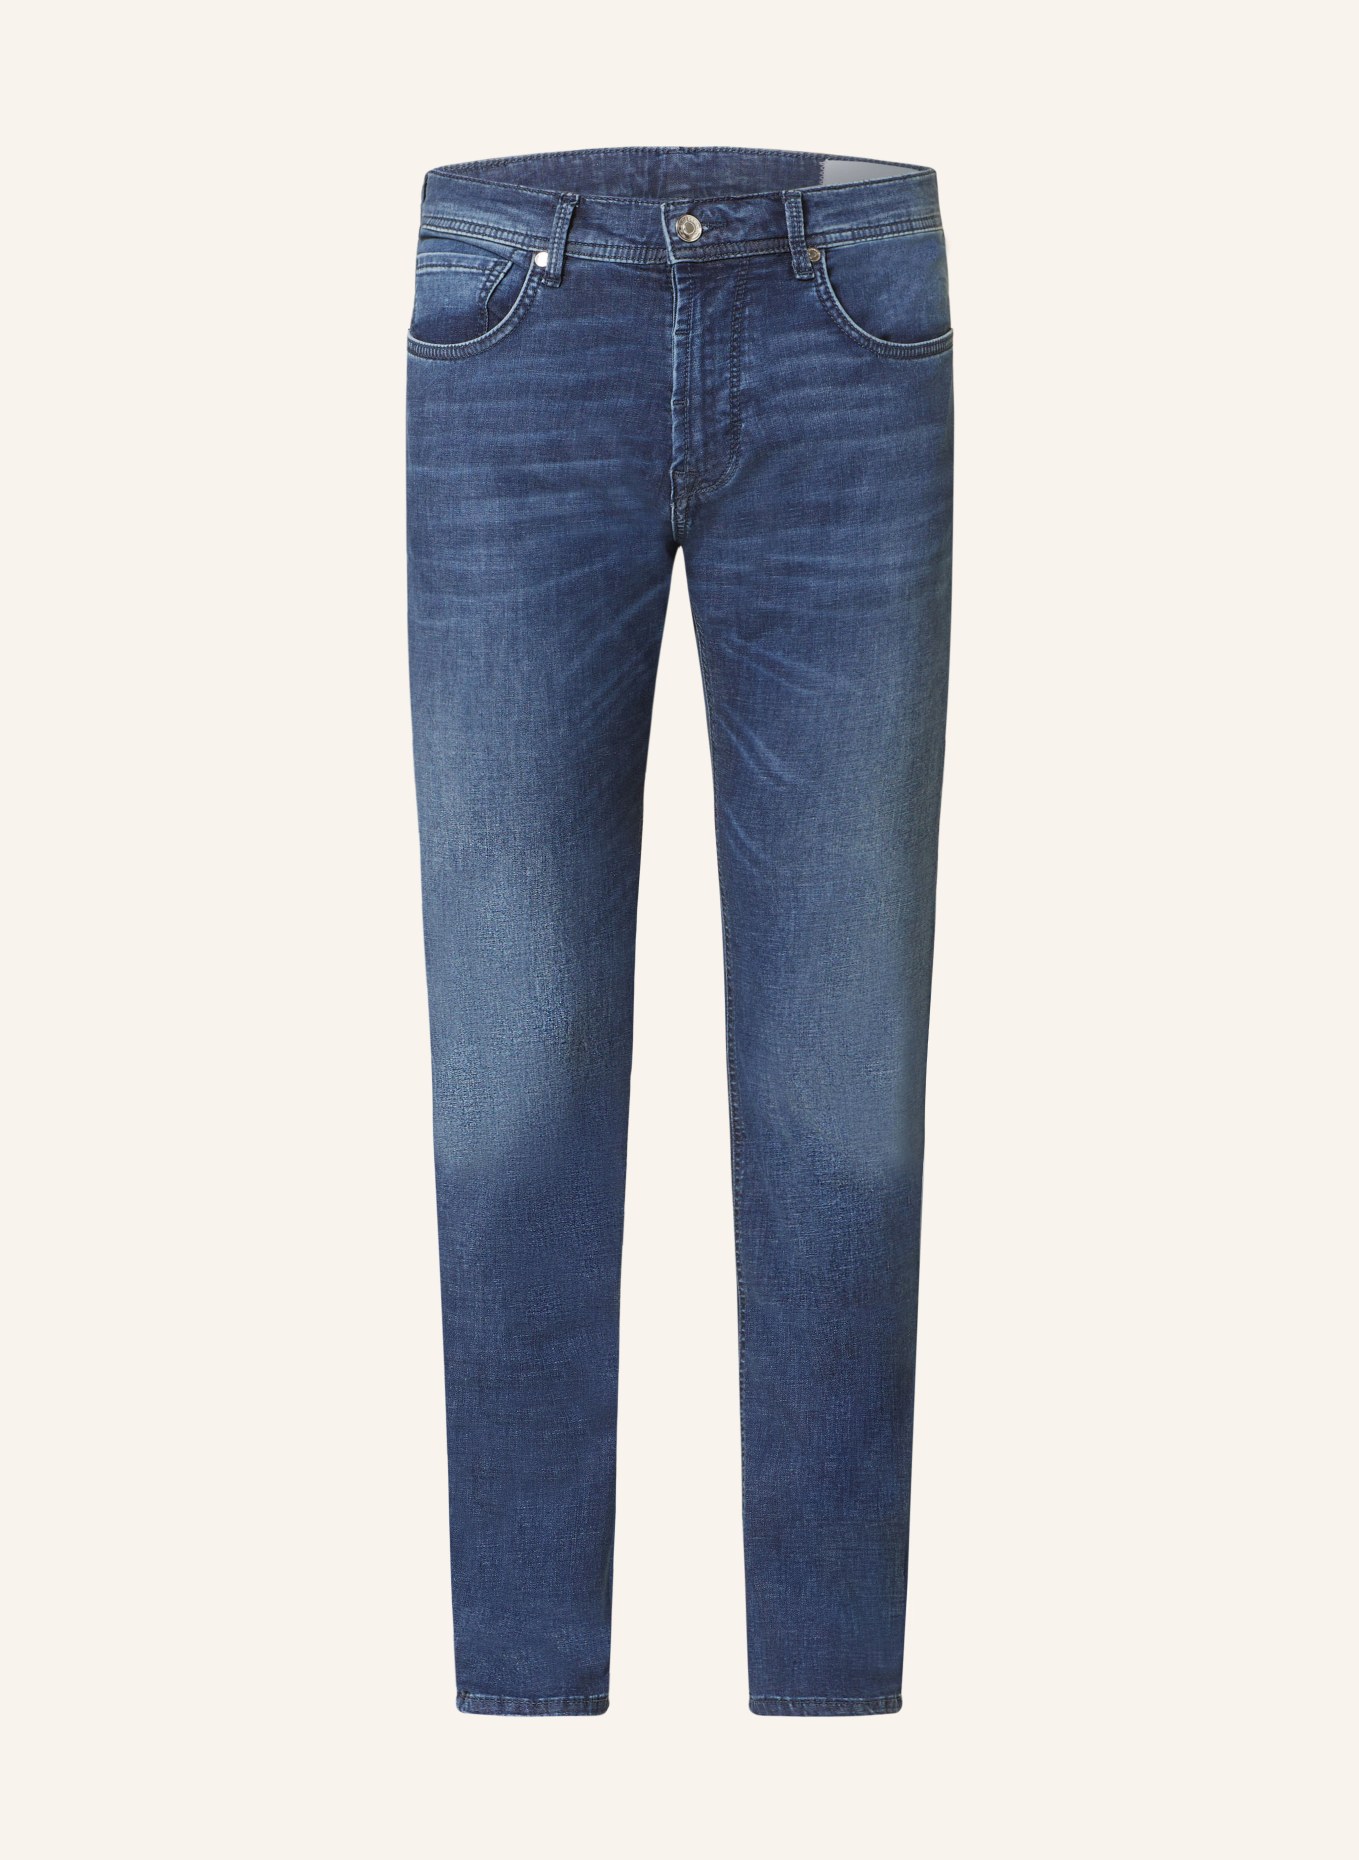 BALDESSARINI Jeans Regular Fit, Farbe: 6815 dark blue used whisker (Bild 1)